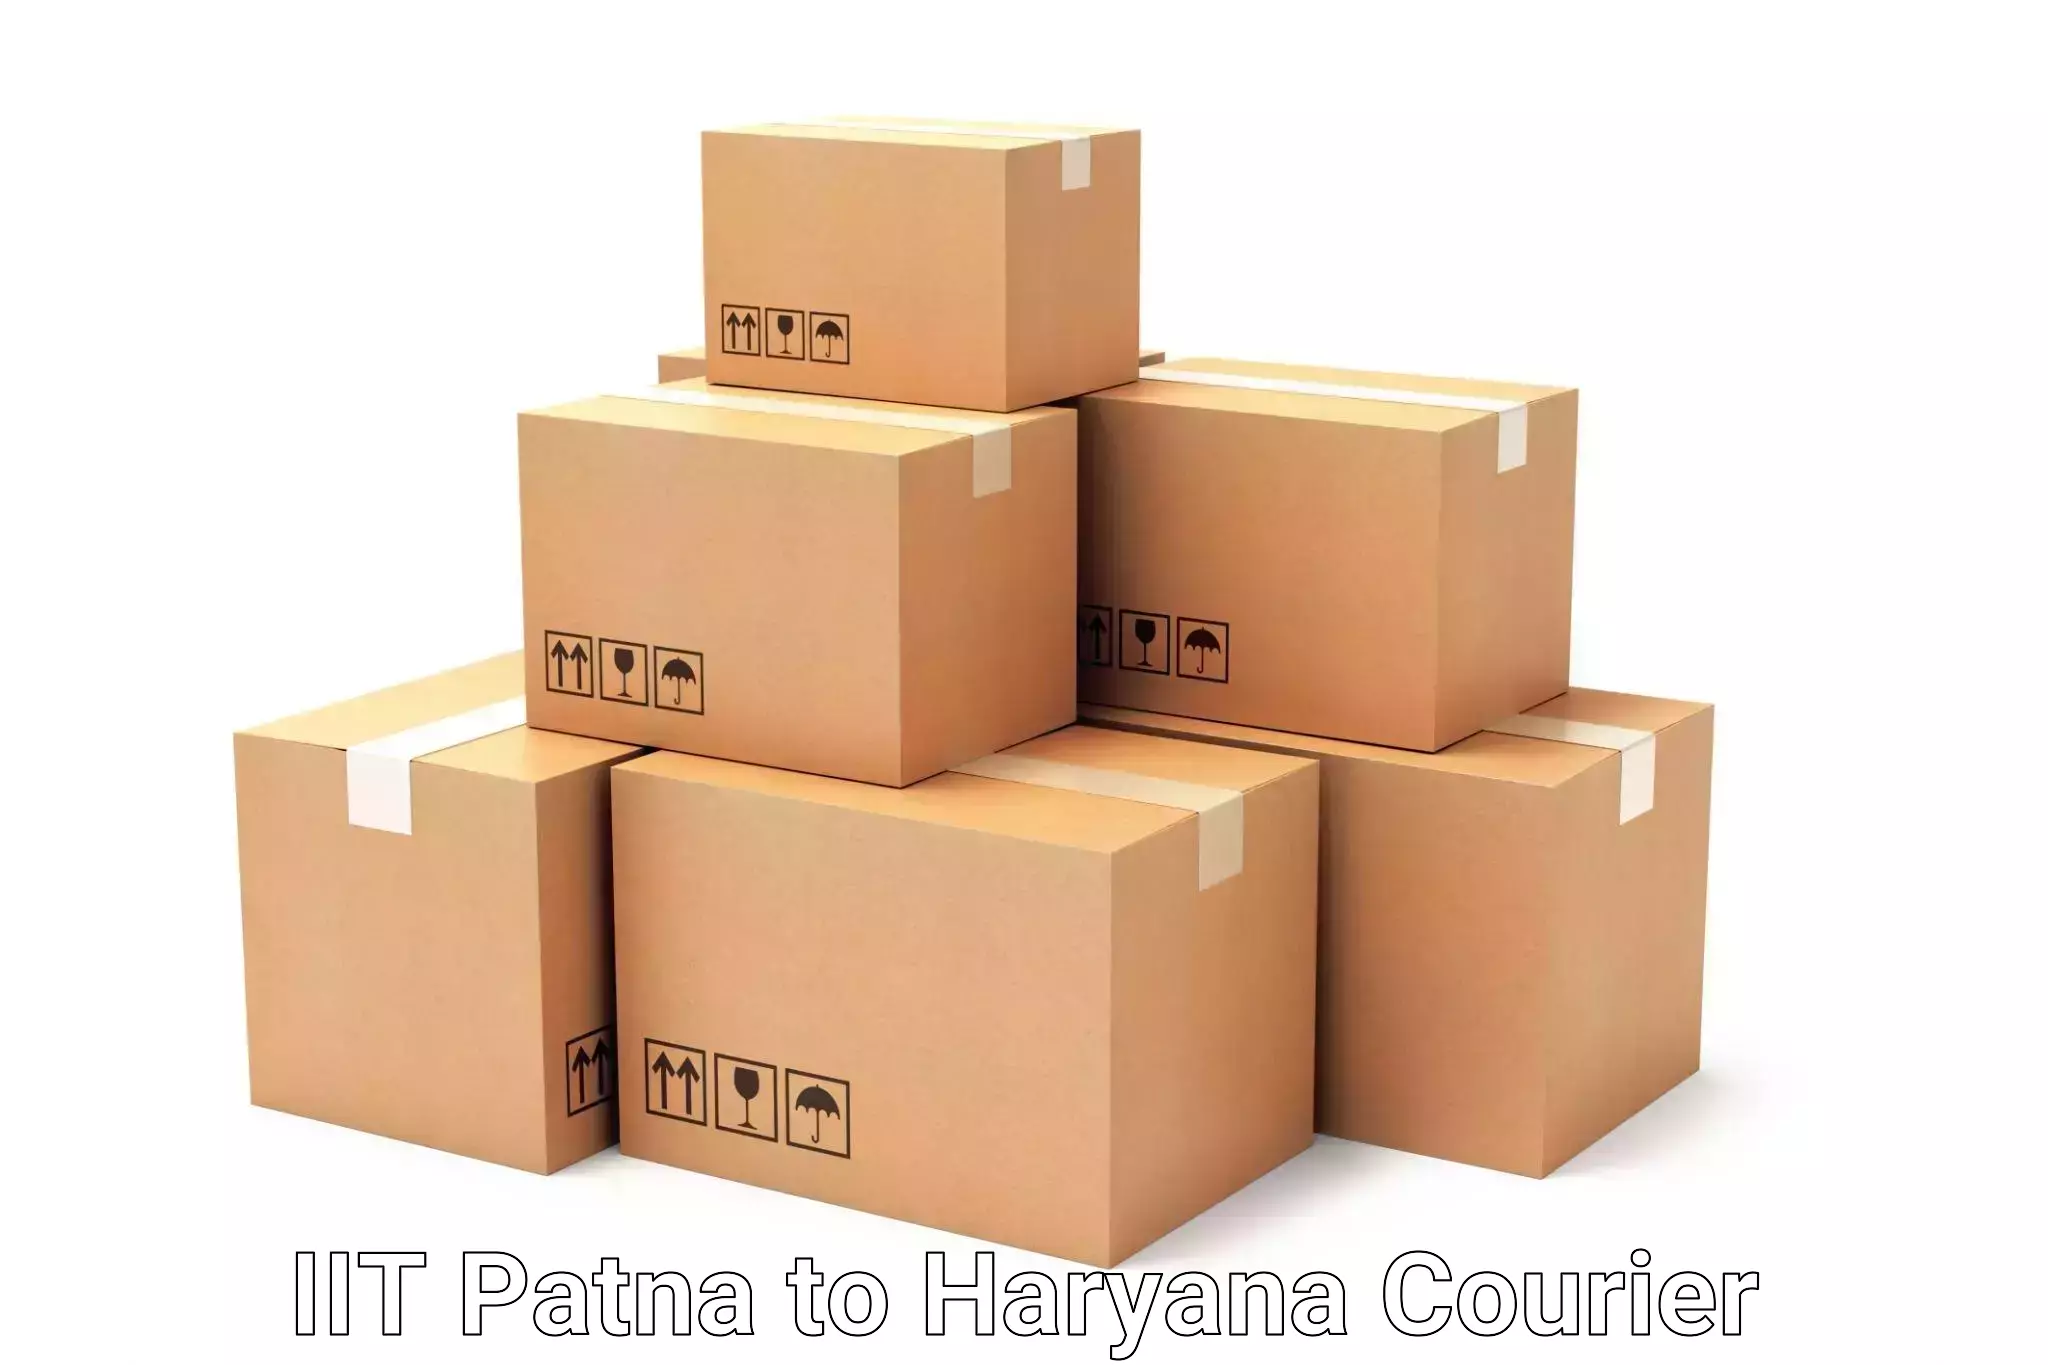 Luggage transport service IIT Patna to Karnal